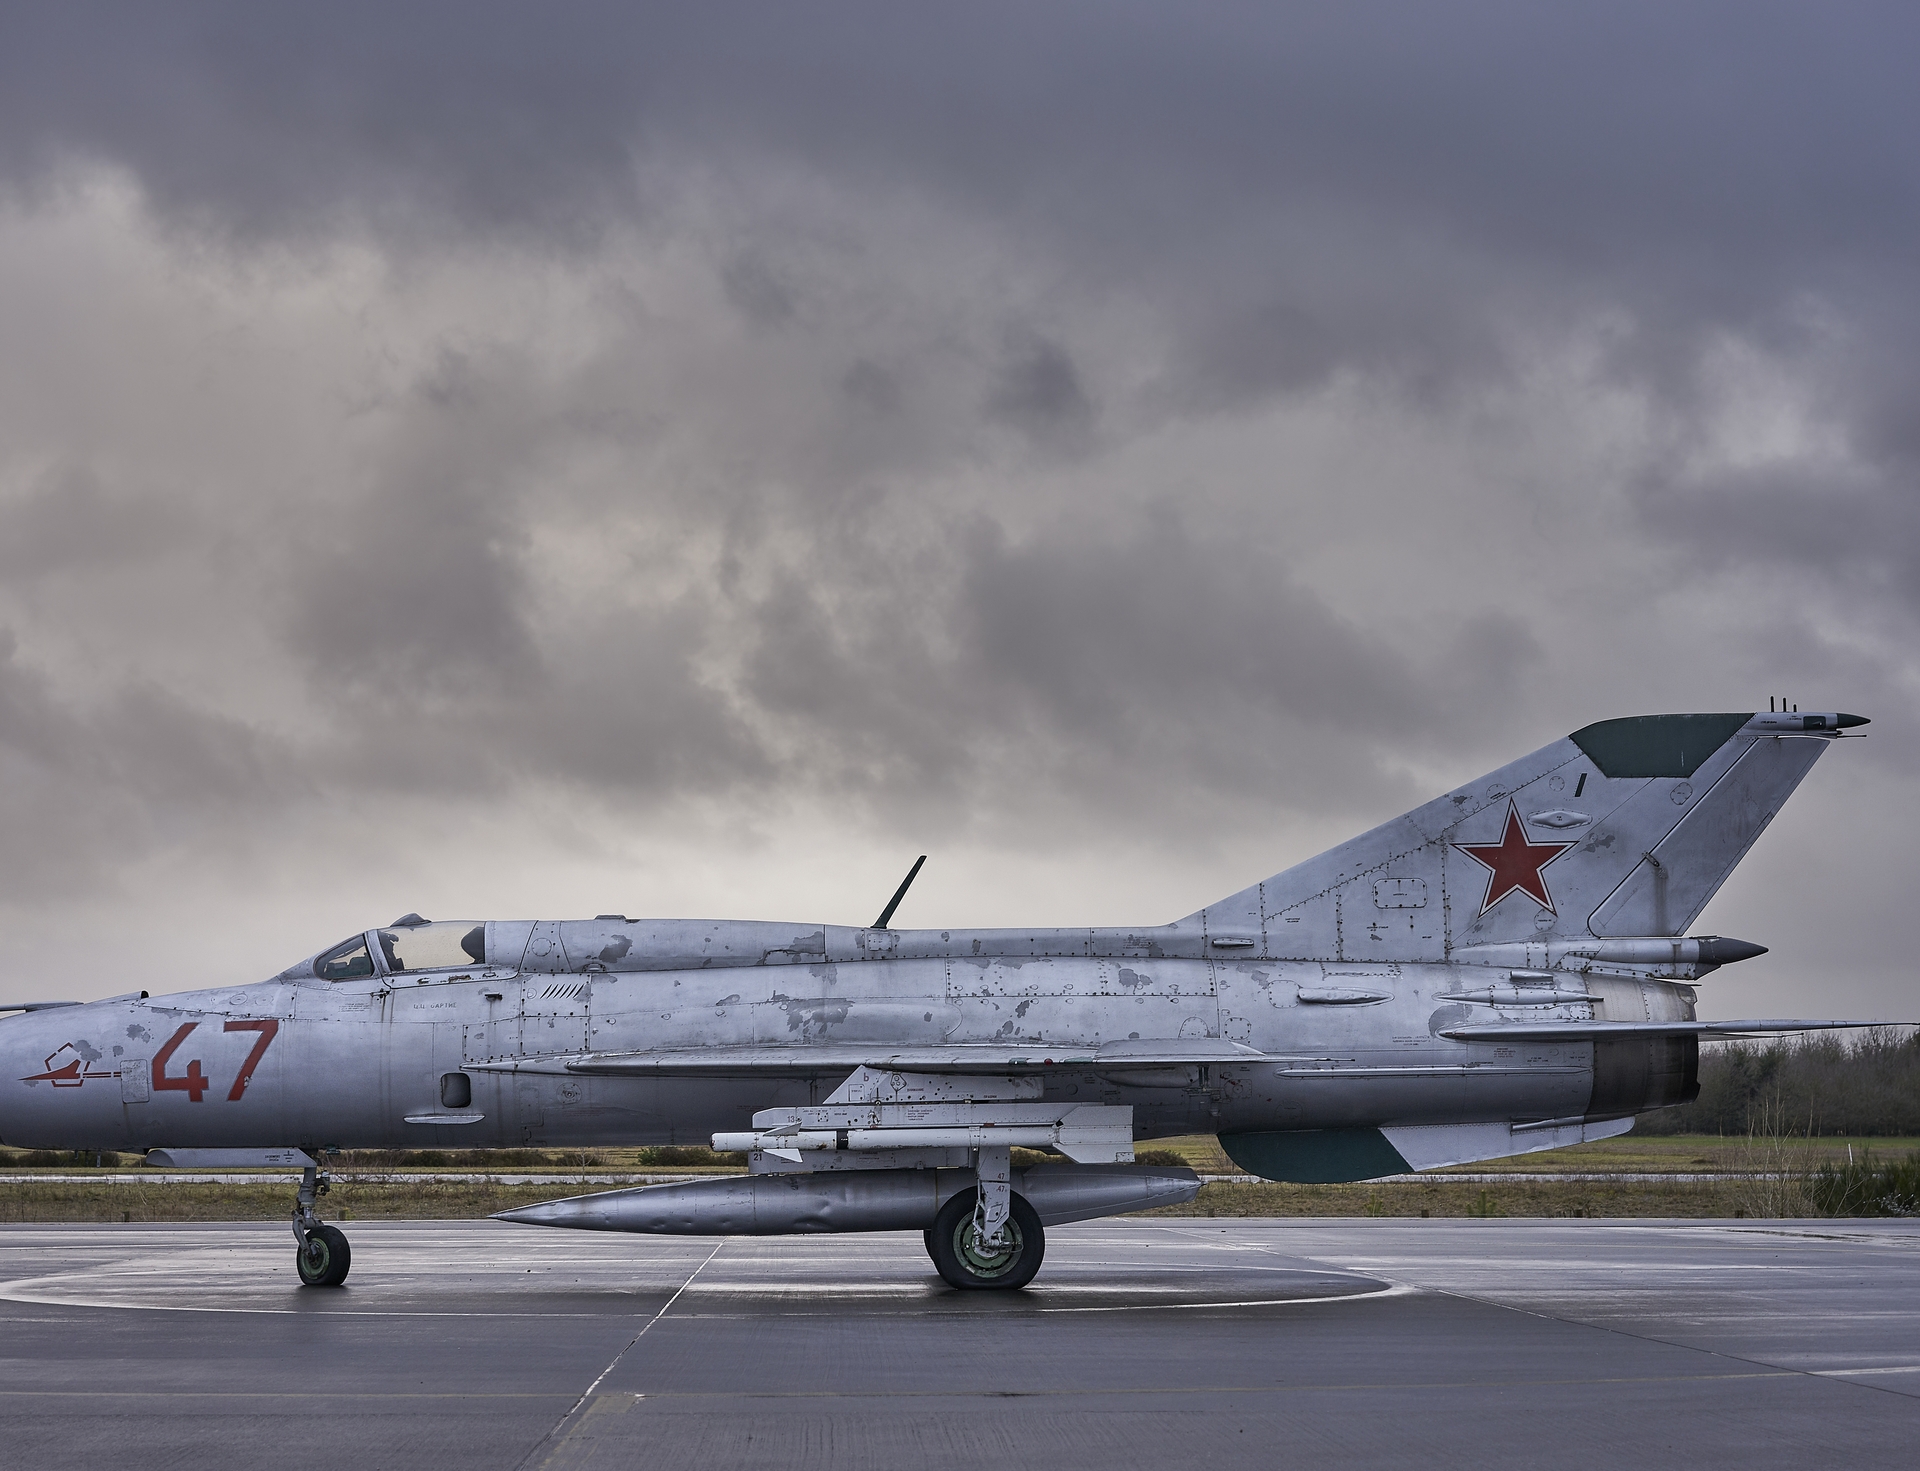 Baza: в Новосибирске двое неизвестных попытались сжечь бомбардировщик Су-24